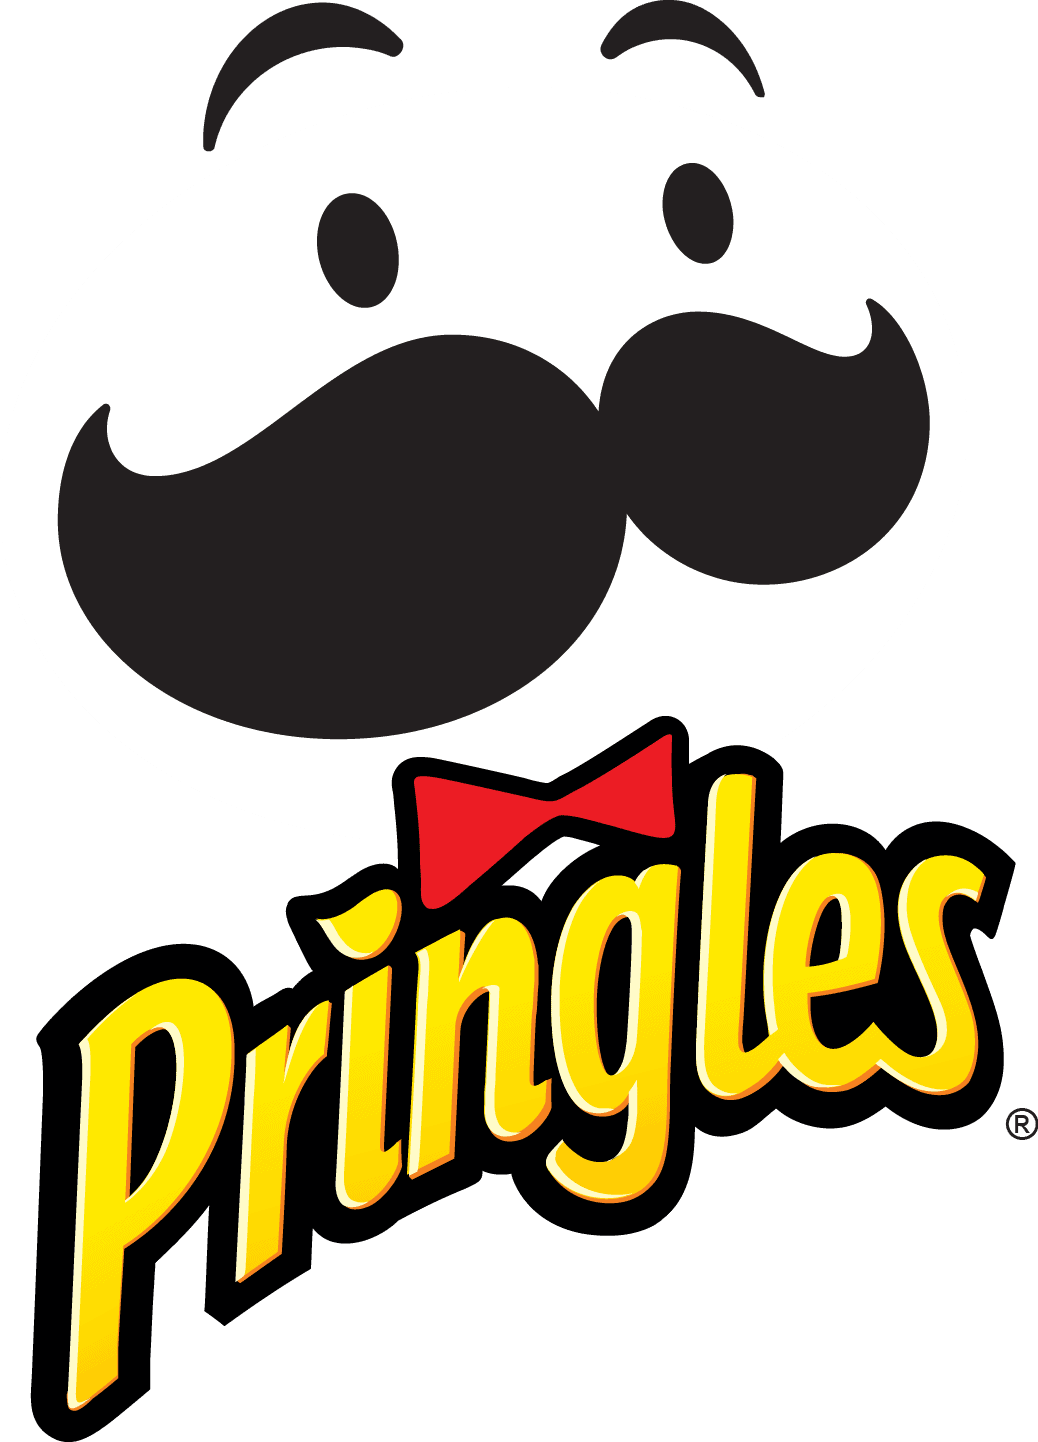 Pringles Logo PNG File